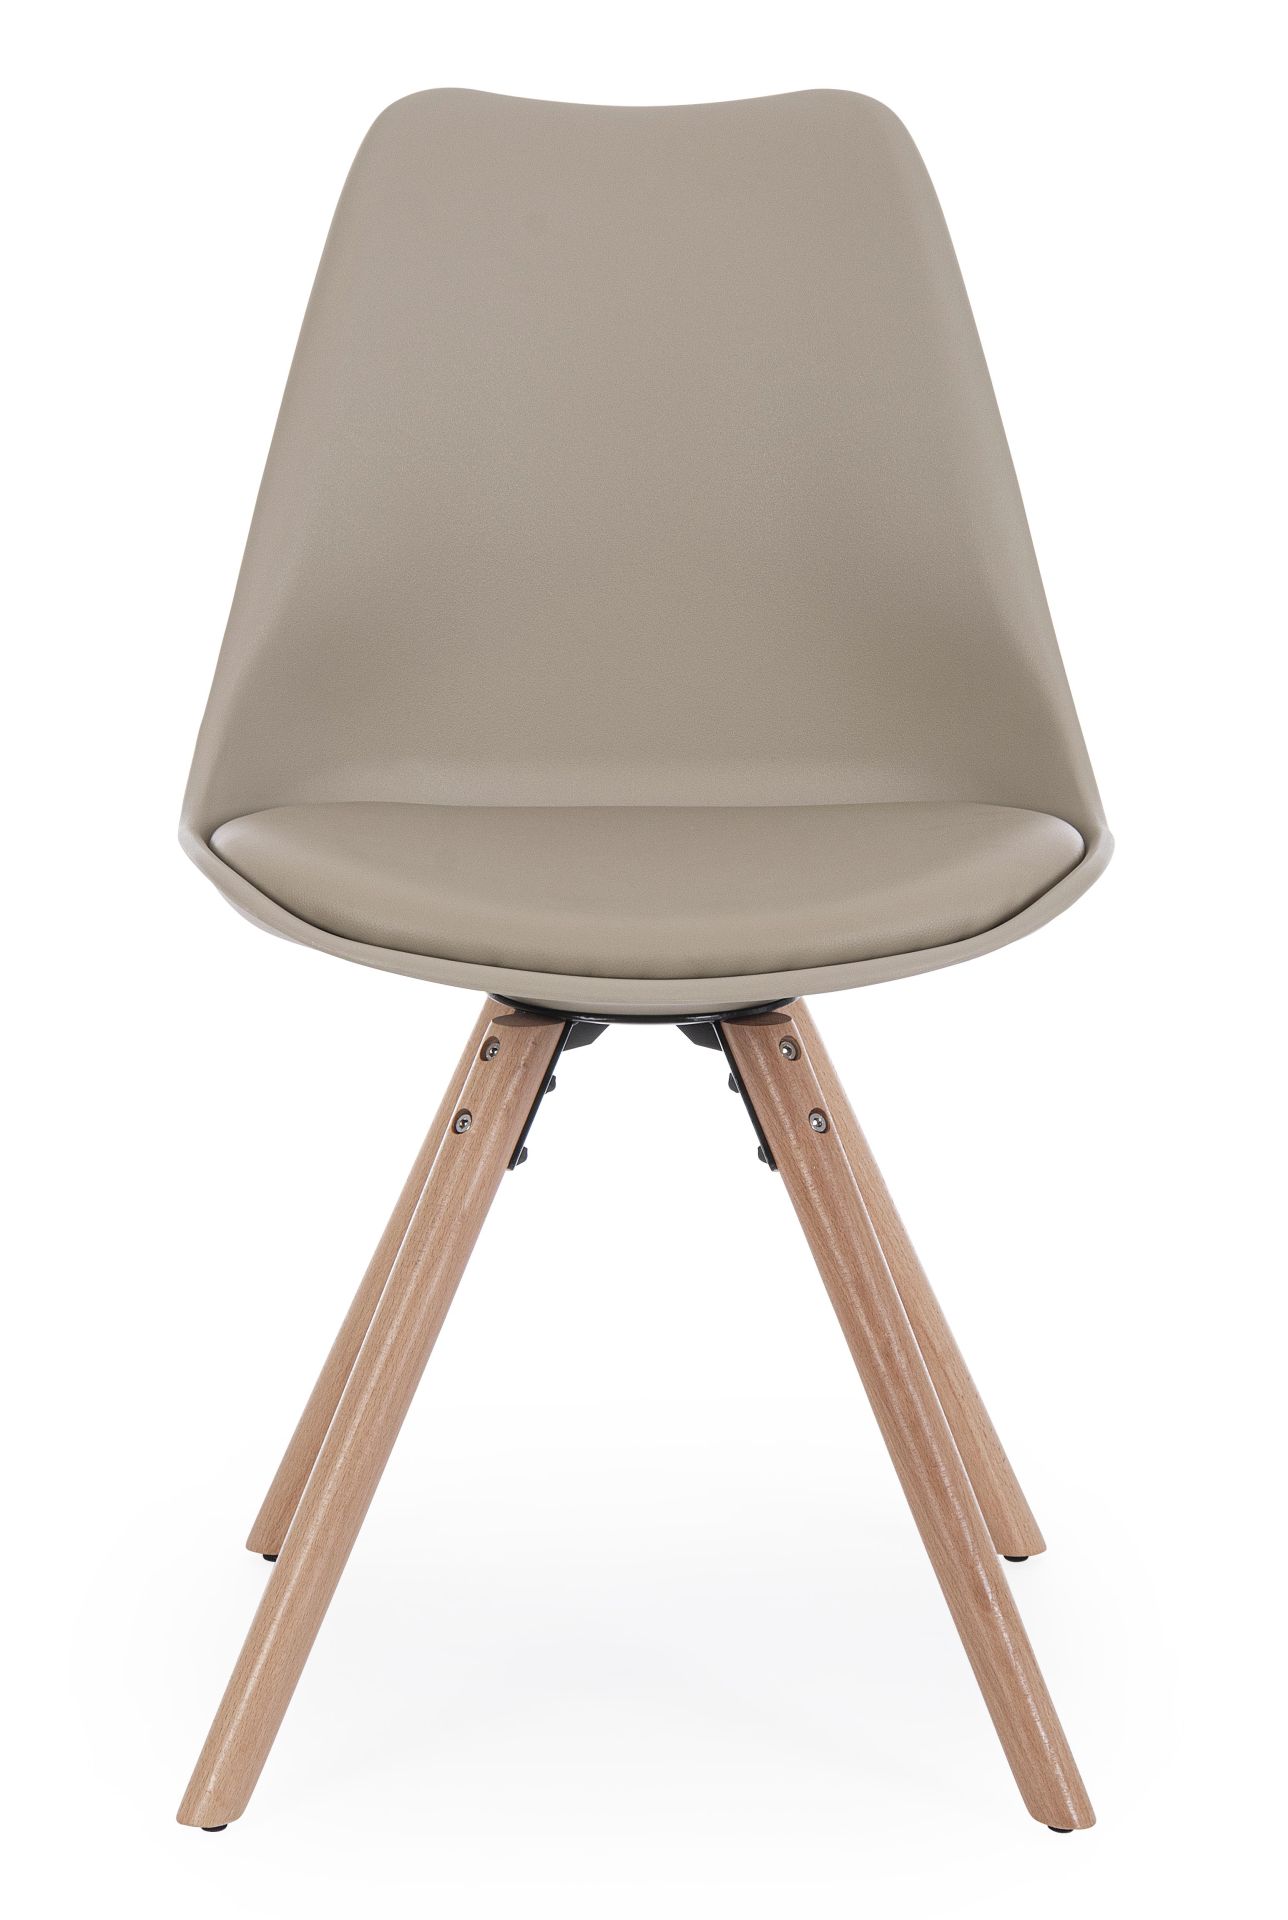 Der Stuhl New Trend überzeugt mit seinem modernem Design. Gefertigt wurde der Stuhl aus Kunststoff, welcher einen Taupe Farbton besitzt. Das Gestell ist aus Buchenholz. Die Sitzhöhe des Stuhls ist 49 cm